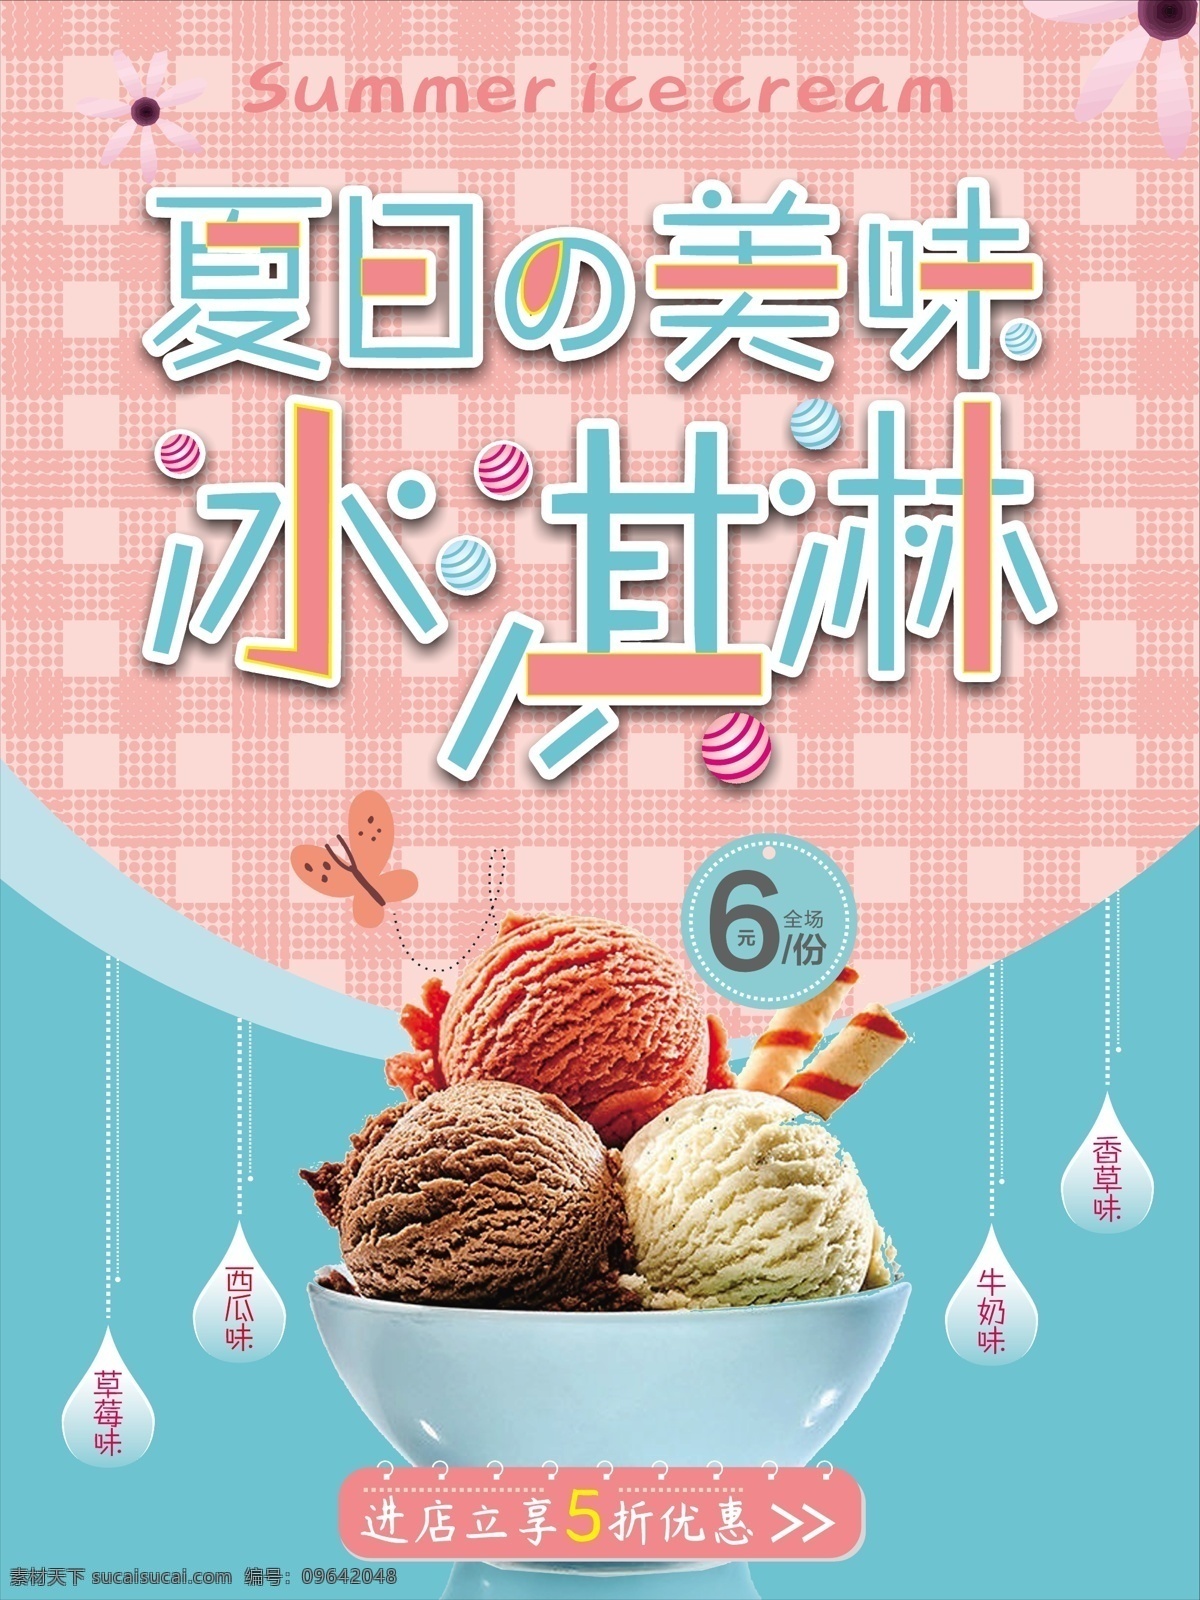 夏日 冰淇淋 美味 冰 激 淋 清新 海报 冰激凌 清新背景 美食 水果